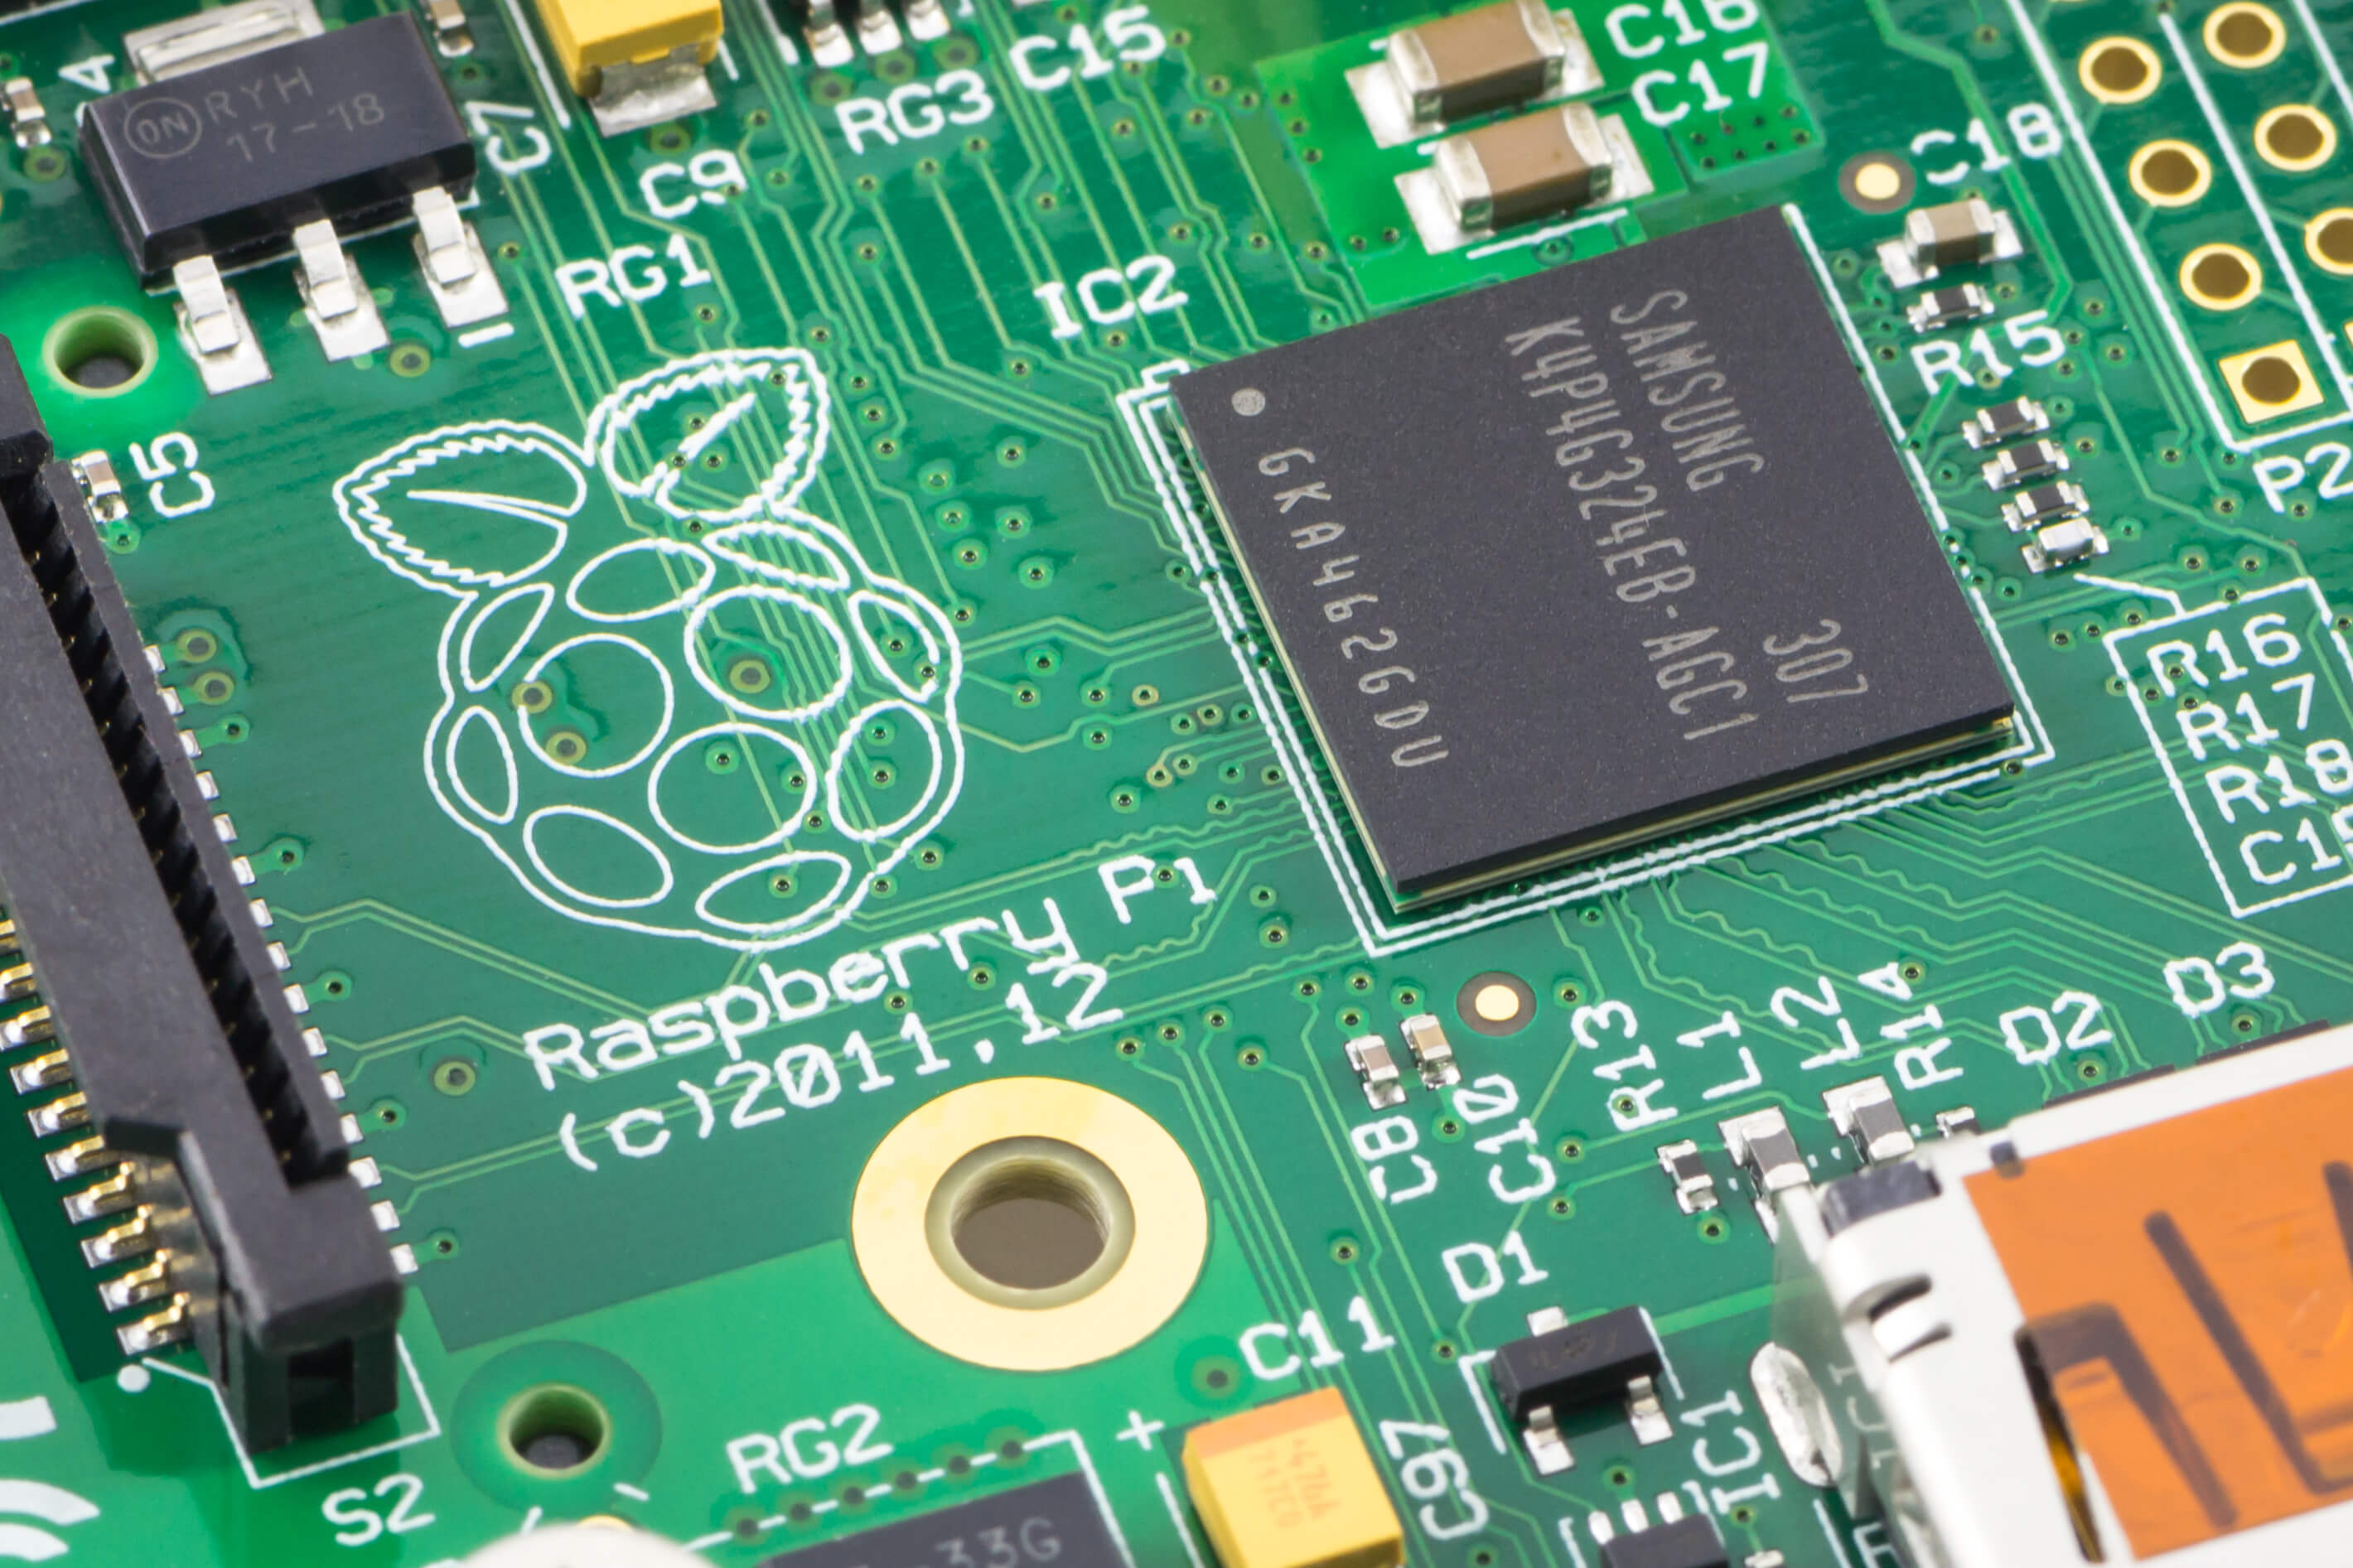 Close-up of a Raspberry Pi Model-B Rev2